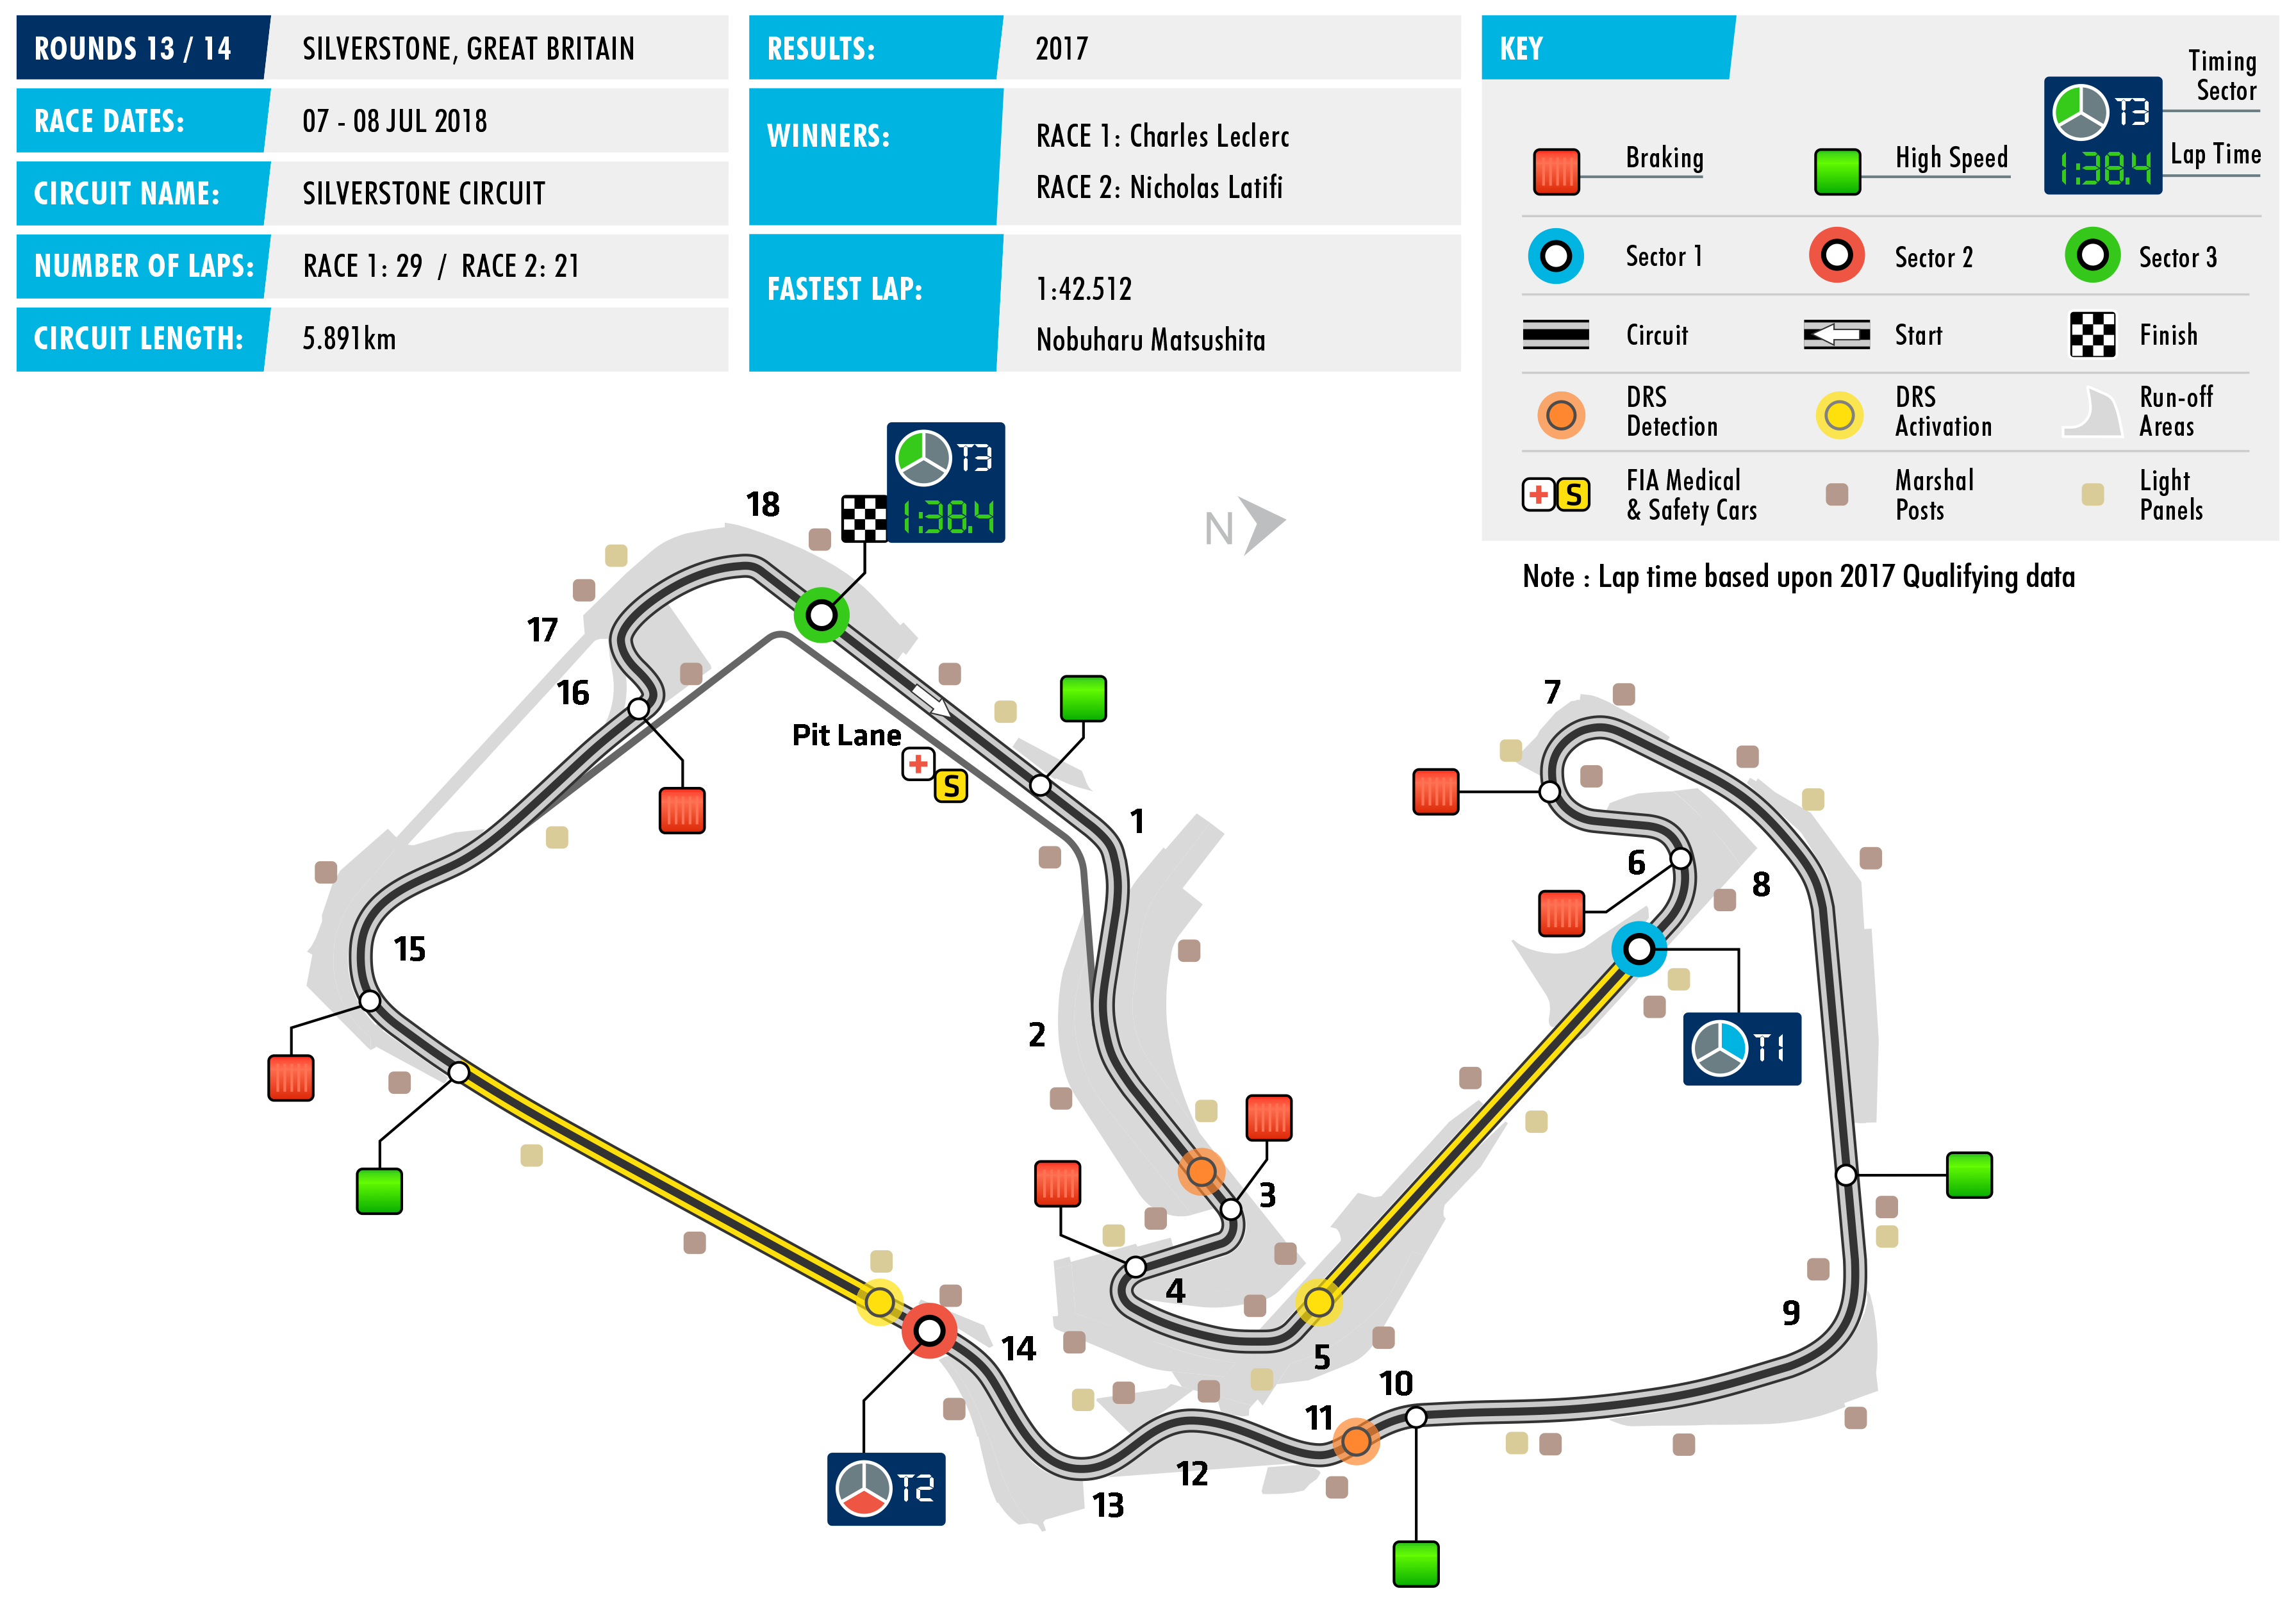 Silverstone FIA F2 Track Map